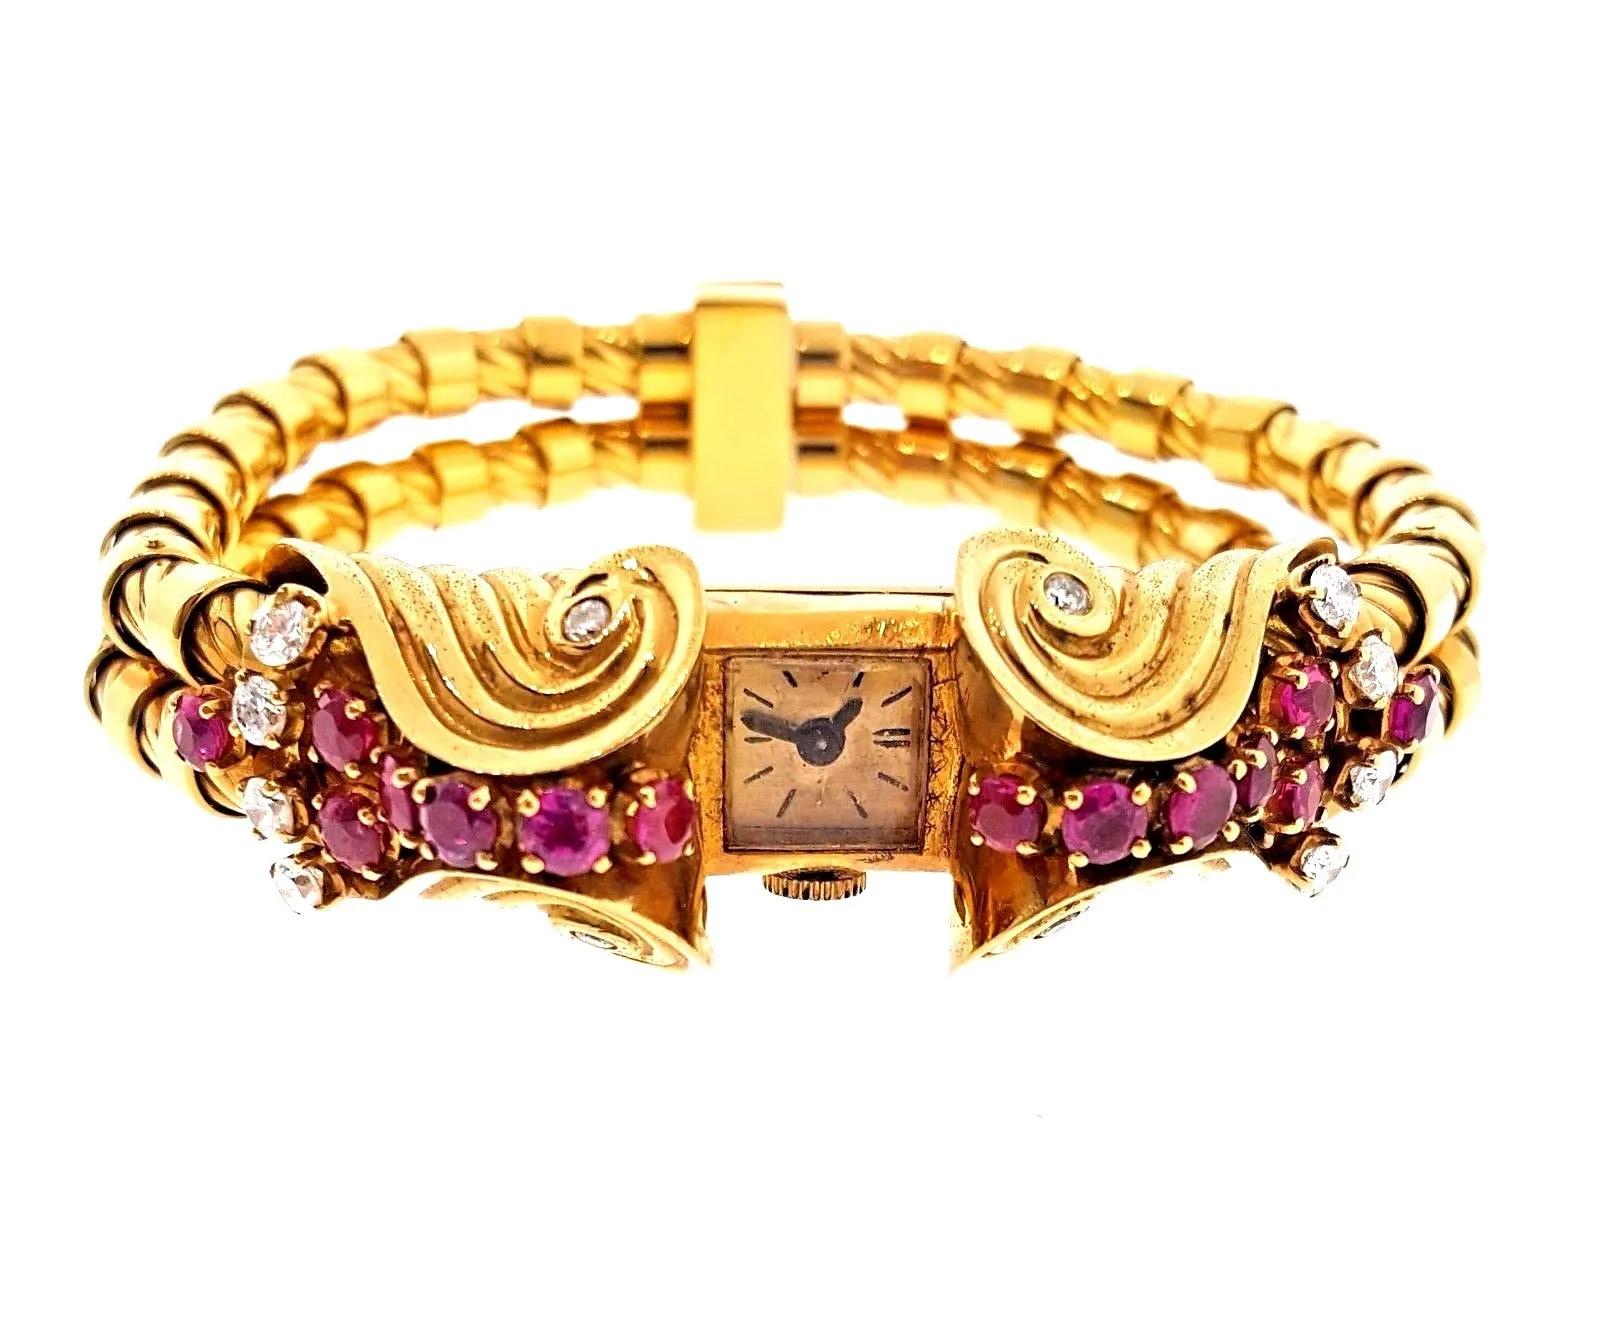 Montre bracelet rétro française en or rose 18 carats avec rubis et diamants

Montre bracelet rétro française magnifiquement réalisée en or rose 18 carats. Le boîtier de la montre est orné de 14 rubis rouges et de 12 diamants pesant environ 3,00